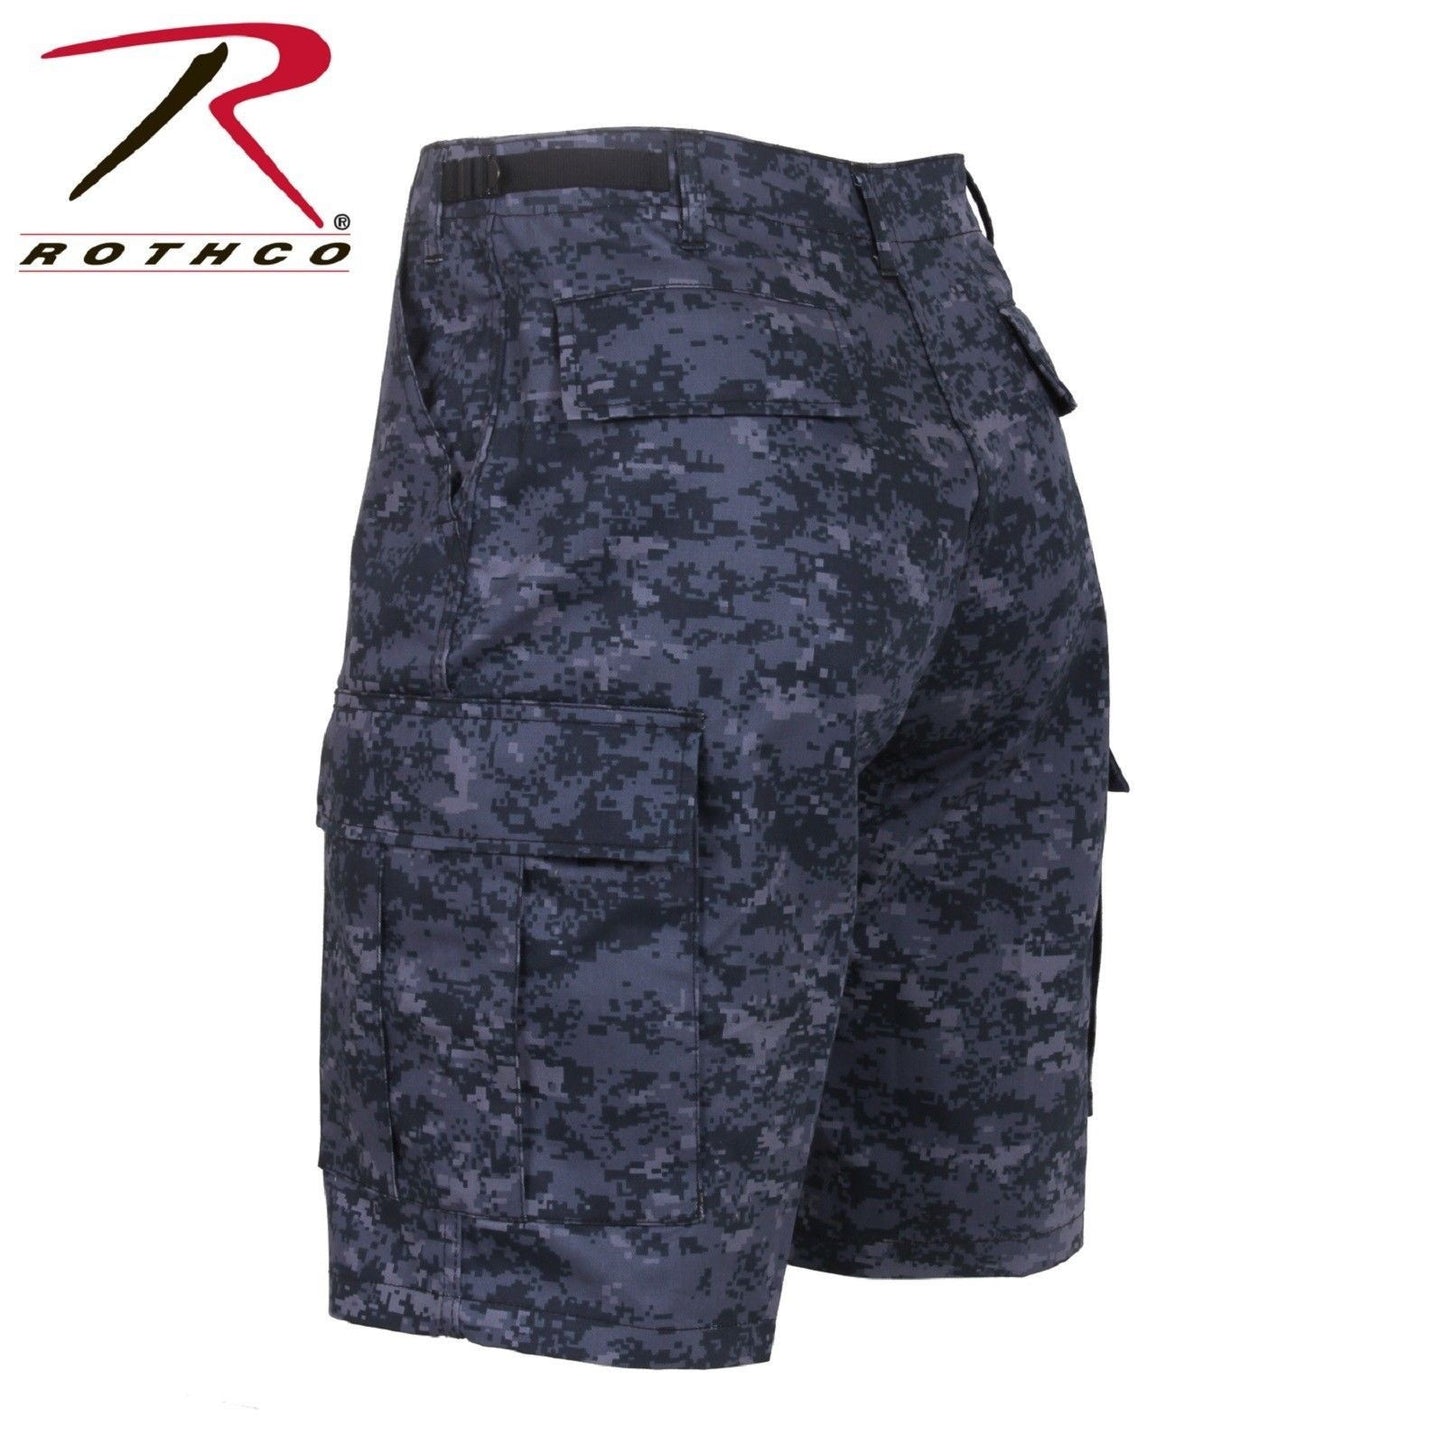 Rothco Mens Midnight Blue Digital Camo BDU Cargo Uniform Shorts